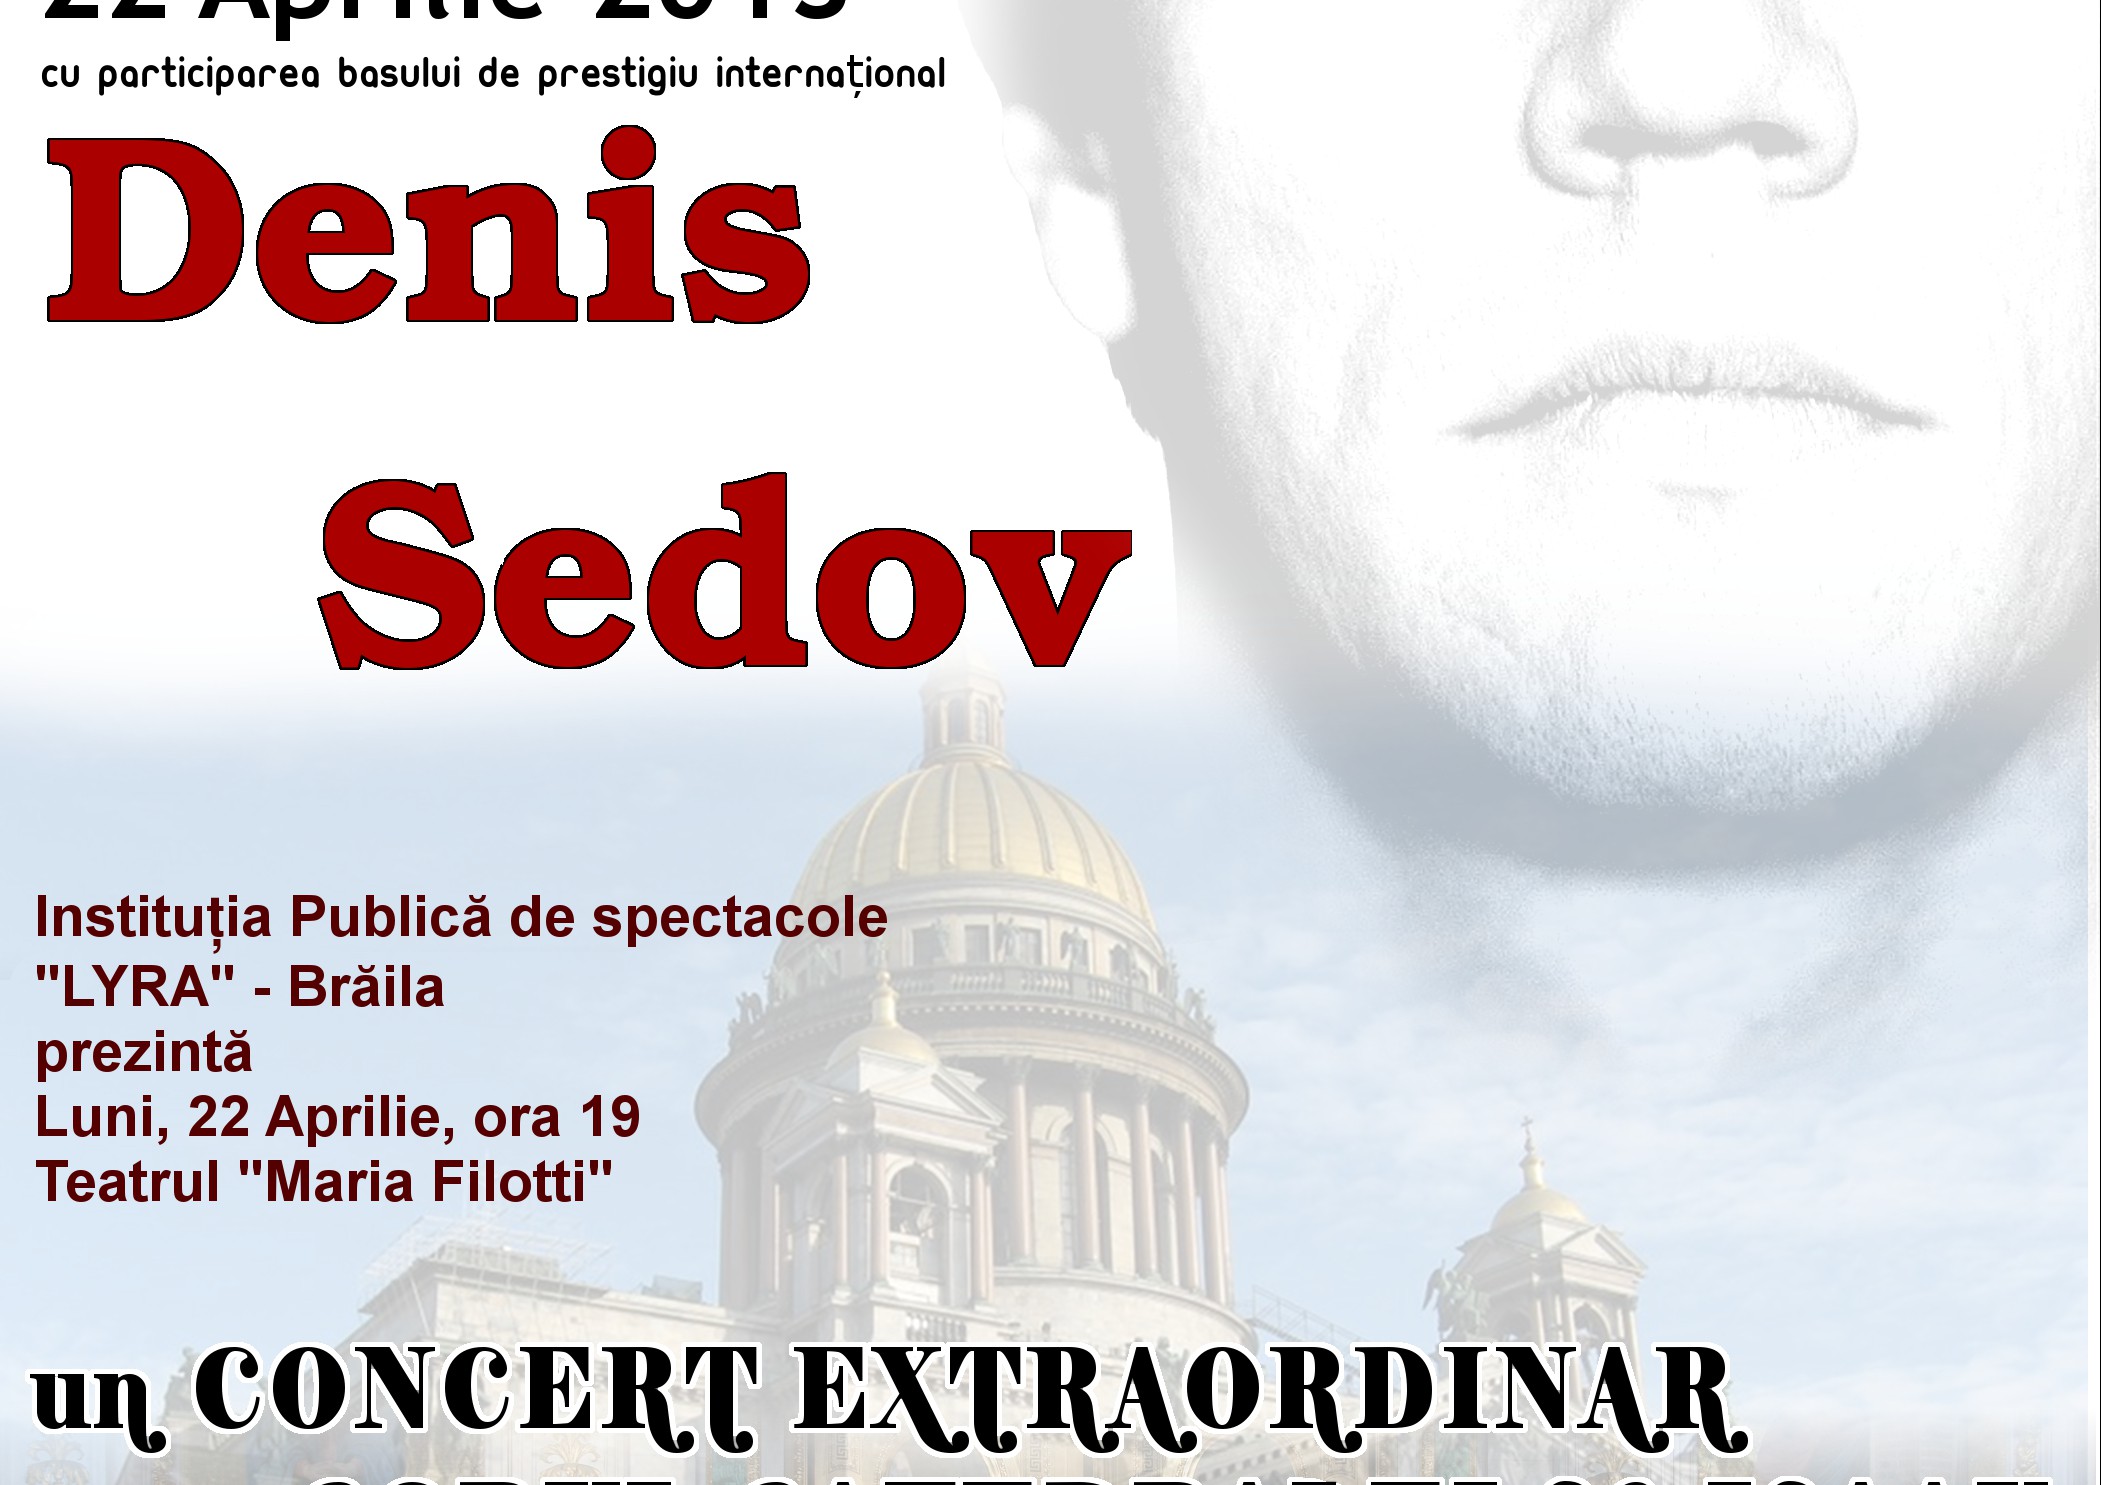 Concert extraordinar al Corului Catedralei Sf. Isaak din Sankt Petersburg împreuna cu basul Denis Sedov